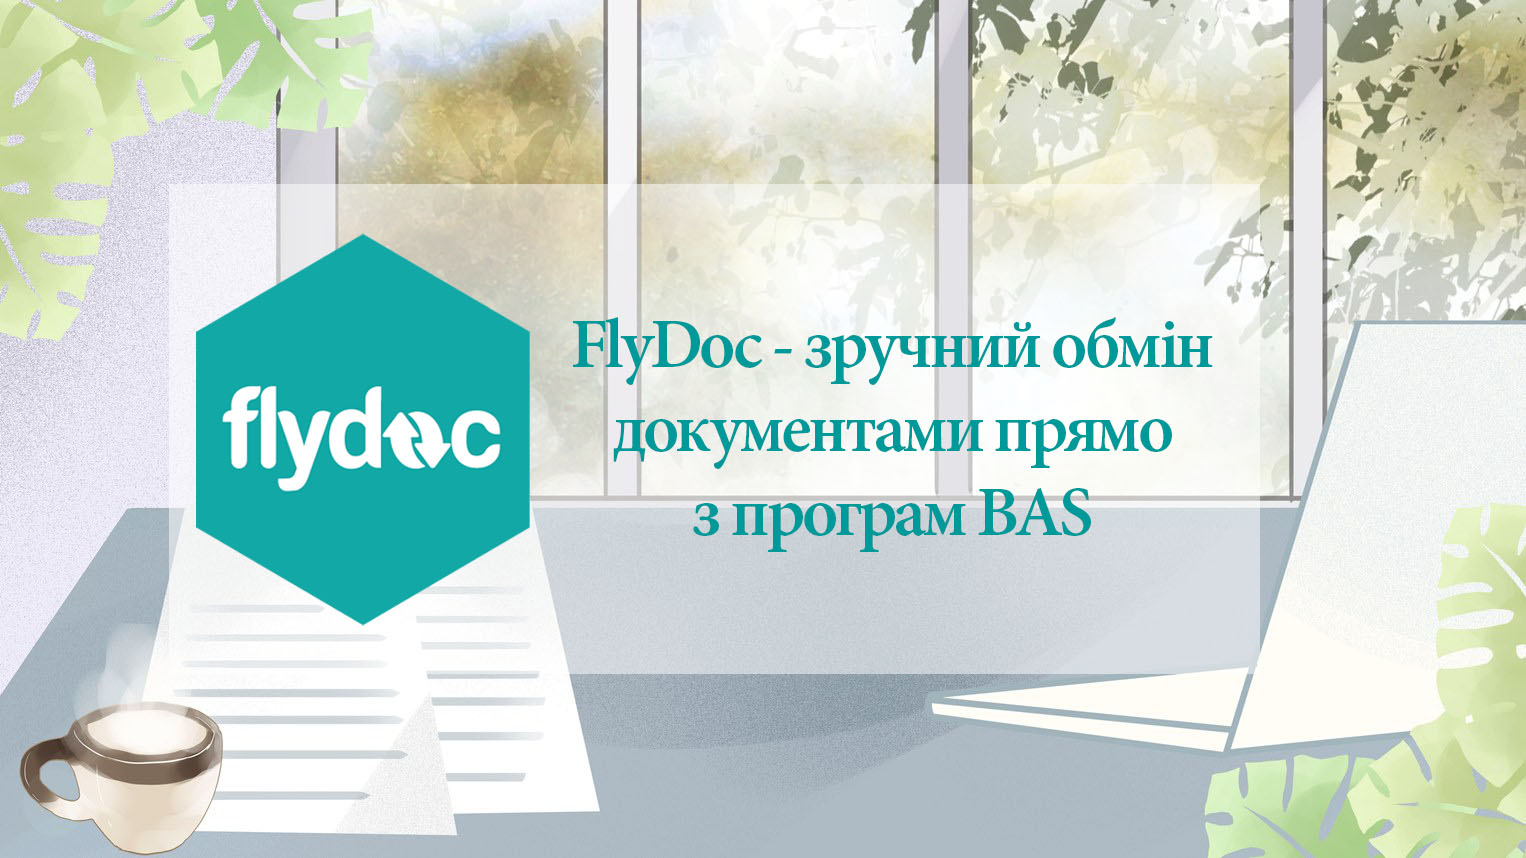 FlyDoc - удобный обмен документами прямо из BAS